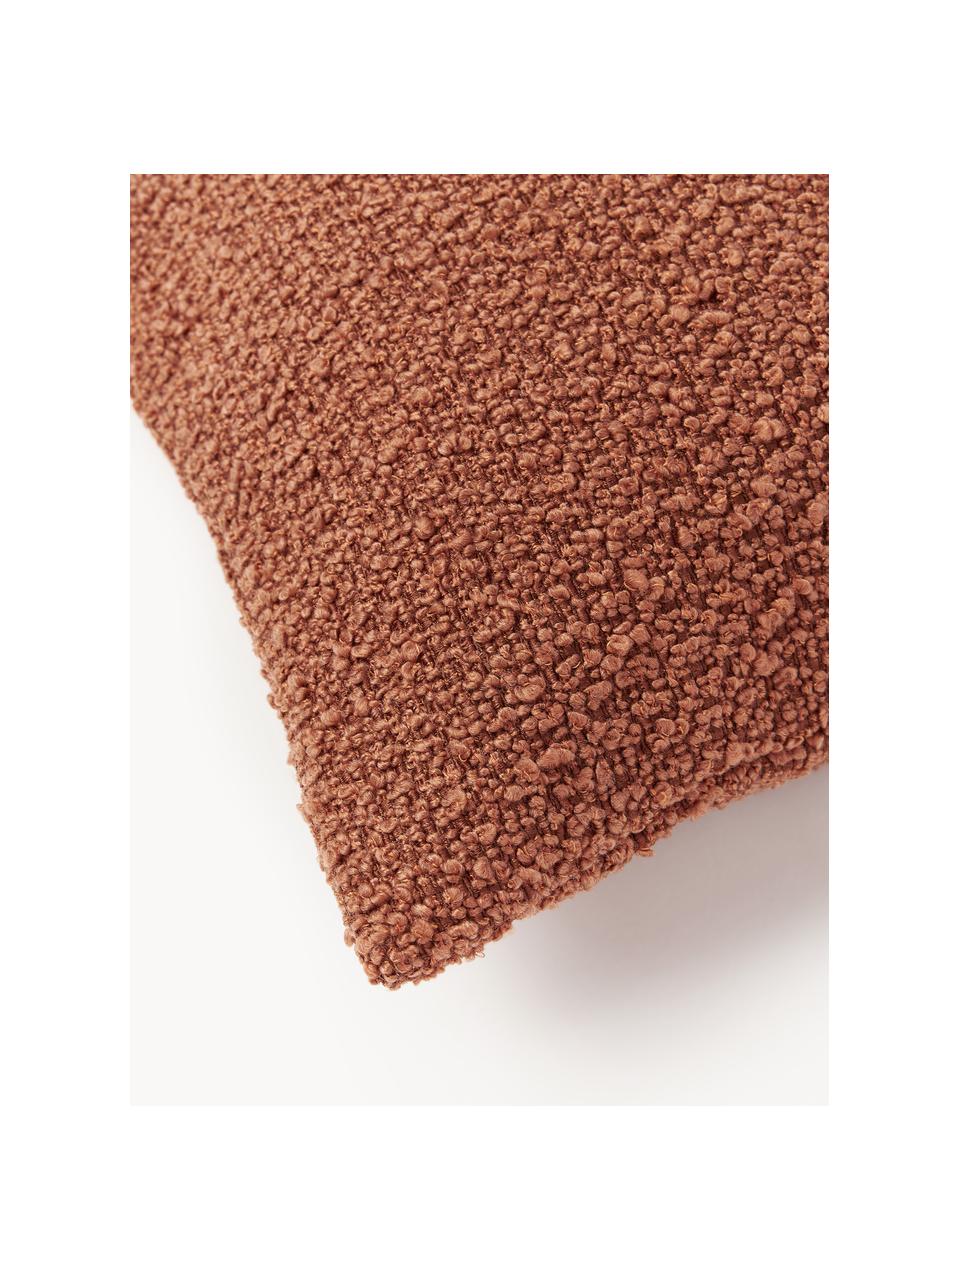 Housse de coussin 30x50 en tissu bouclé Bellamie, Tissu bouclé (95 % polyester, 5 % polyacrylique)

Le bouclé est un matériau qui se caractérise par sa structure incurvée irrégulière. La surface caractéristique est créée par des boucles tissées de fils de différents types, qui confèrent au tissu une structure unique. La structure bouclée a un effet à la fois isolant et moelleux, ce qui rend le tissu particulièrement douillet, Bouclé terracotta, larg. 30 x long. 50 cm